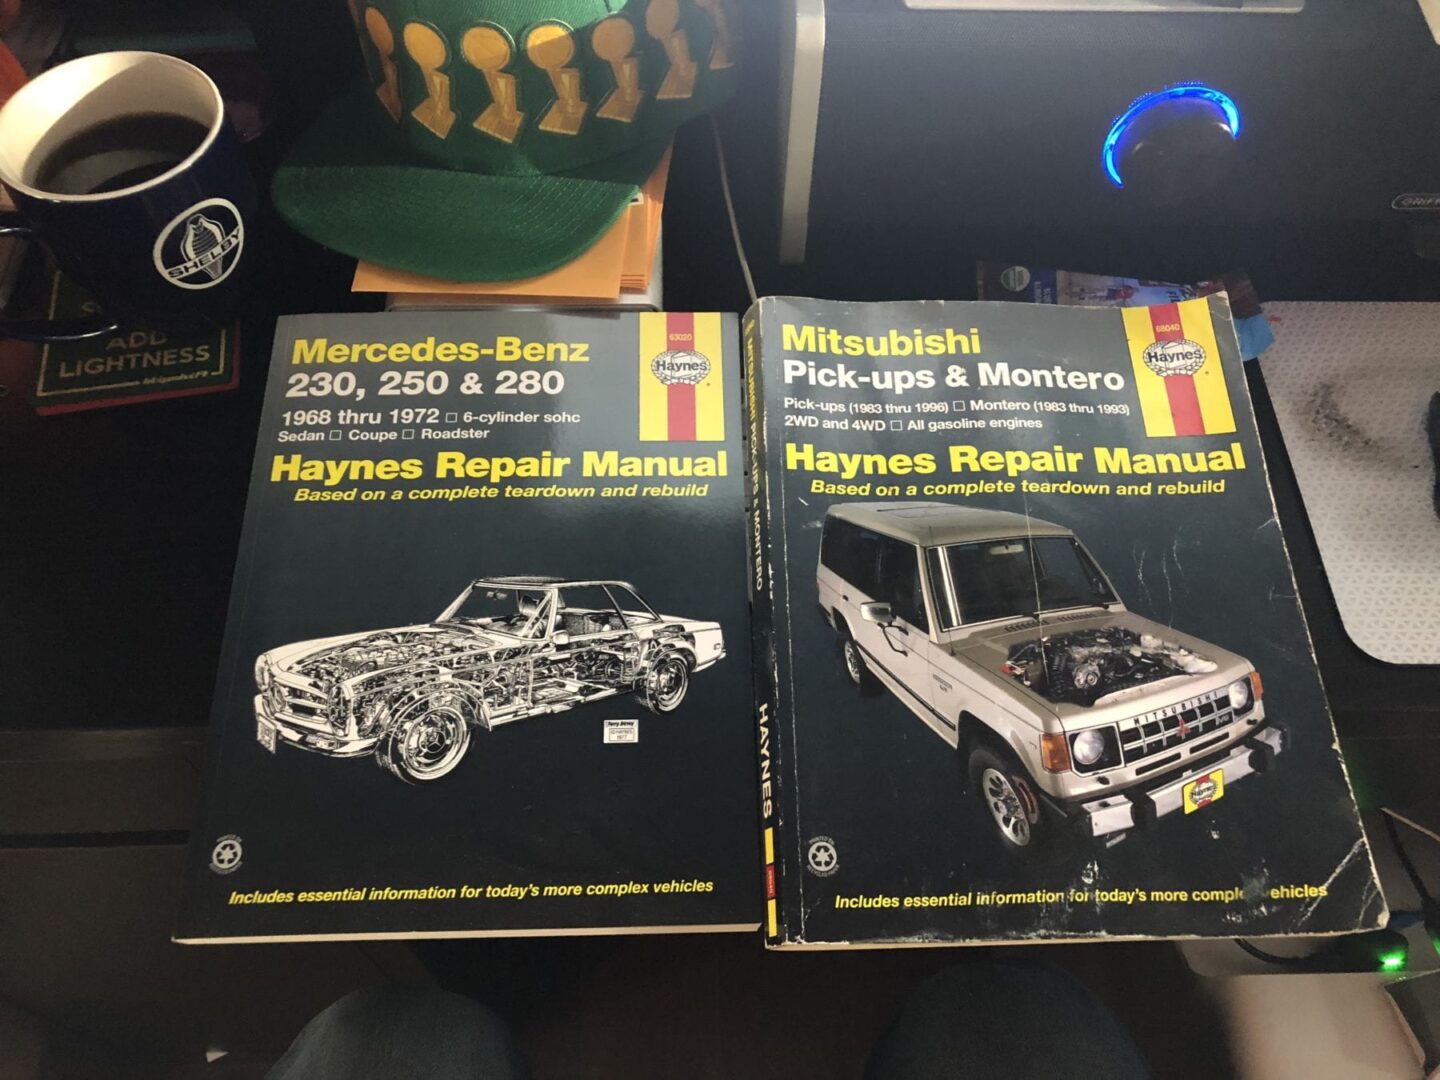 Mercedes-Benz and Mitsubishi Haynes Manuals